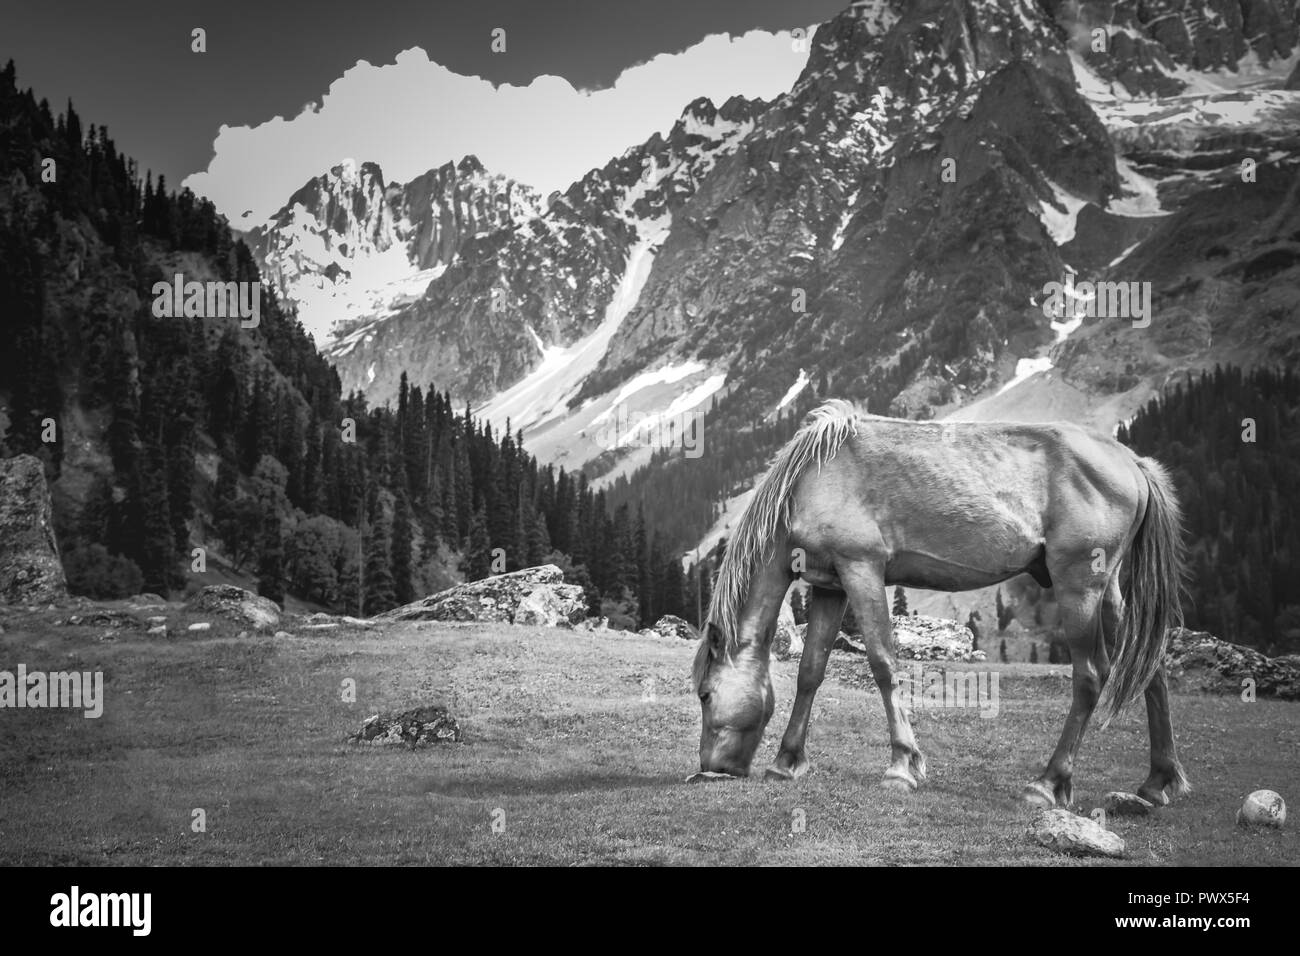 Cavallo al pascolo su una prateria in Sonmarg, India, 85km a est di Srinagar contro la montagna himalayana in estate Foto Stock